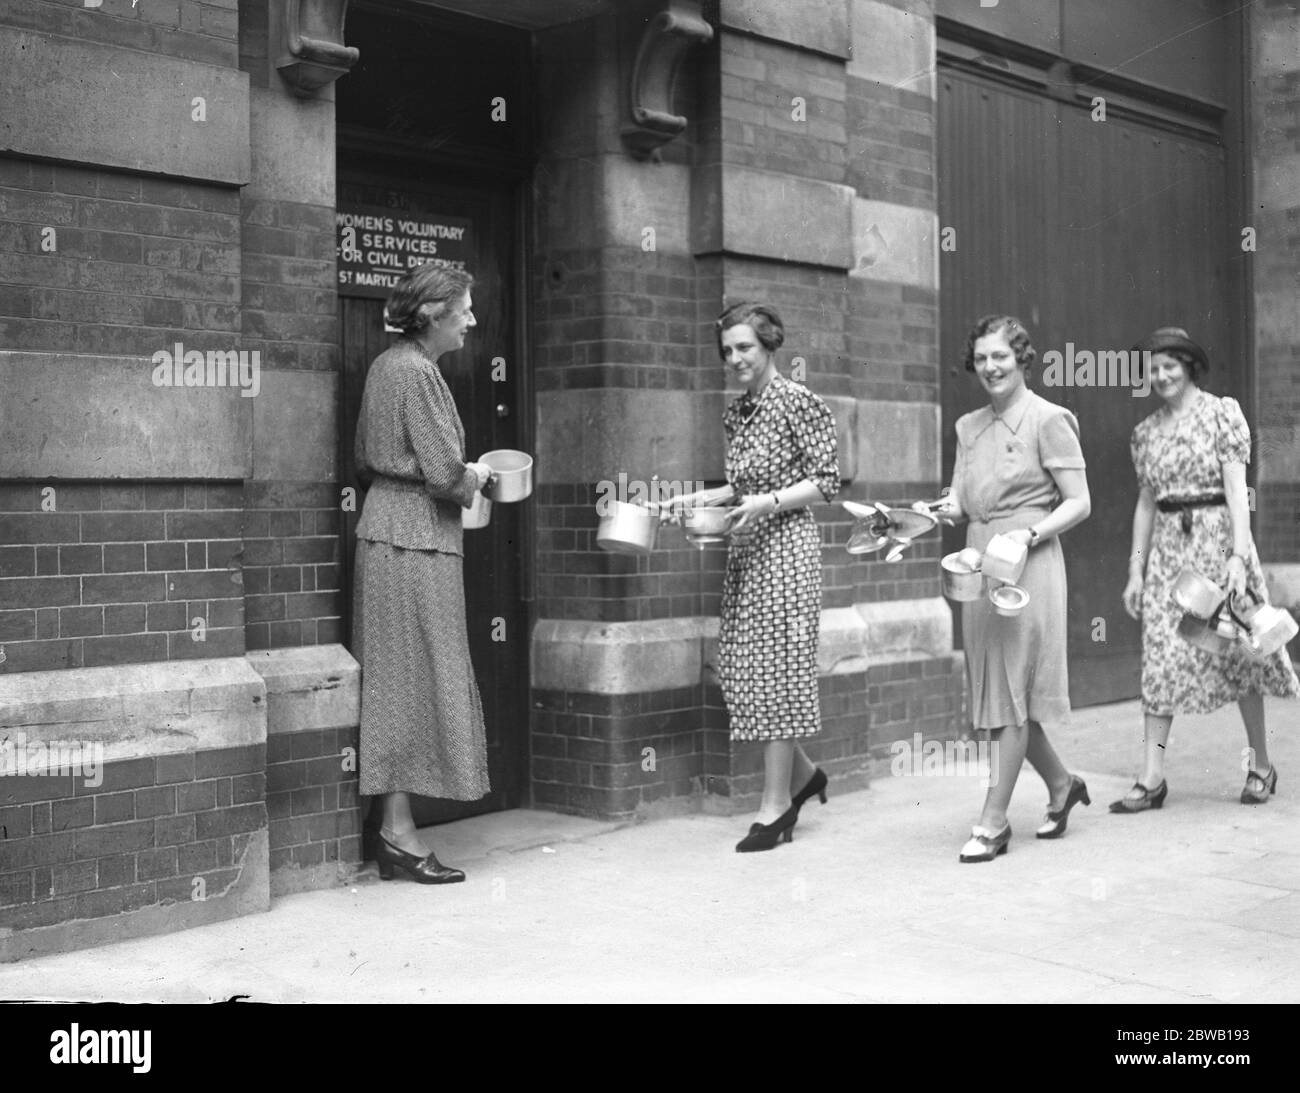 Die Öffentlichkeit machte das Sammeln von Aluminium für die Umwandlung in "Flugzeuge ein großer Erfolg. Frau Hartnell (Bürgermeister von Chelsea) wirft einen Beitrag in der Stadtsammlung in Chelsea Town Hall. Juli 1940 Stockfoto